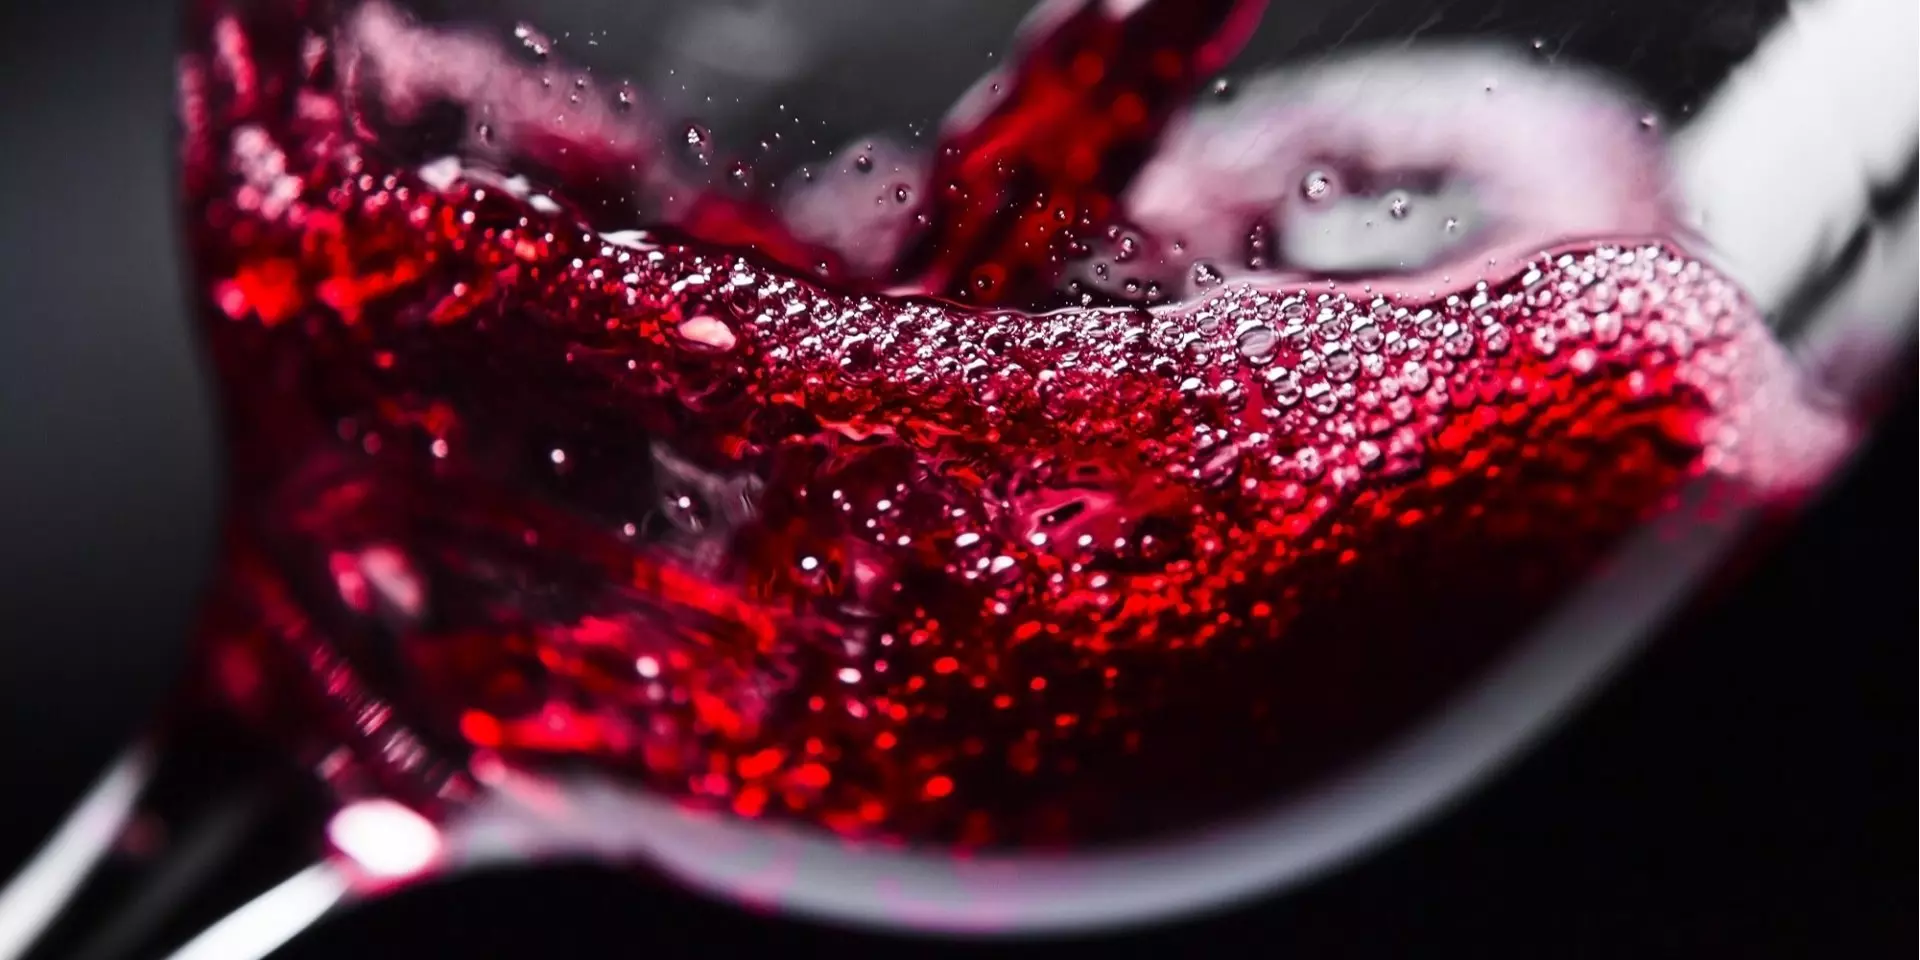 Як вибрати хороше вино: 8 простих порад